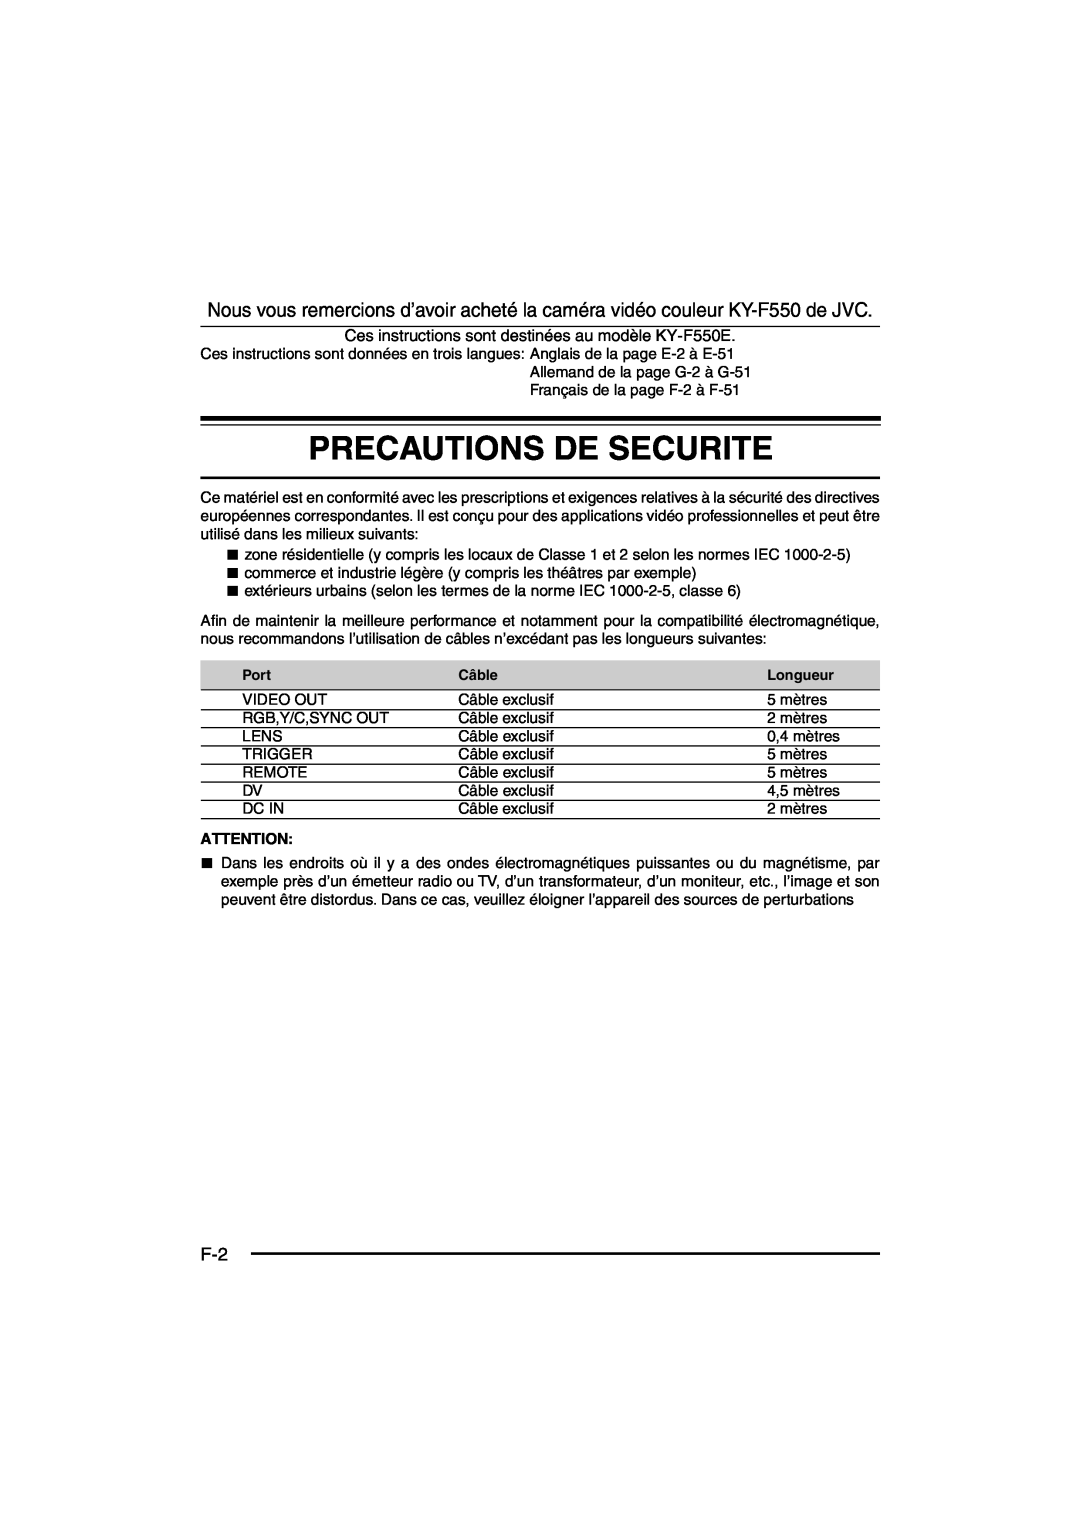 JVC KY-F550E instruction manual Precautions De Securite, Port, Câble, Longueur 